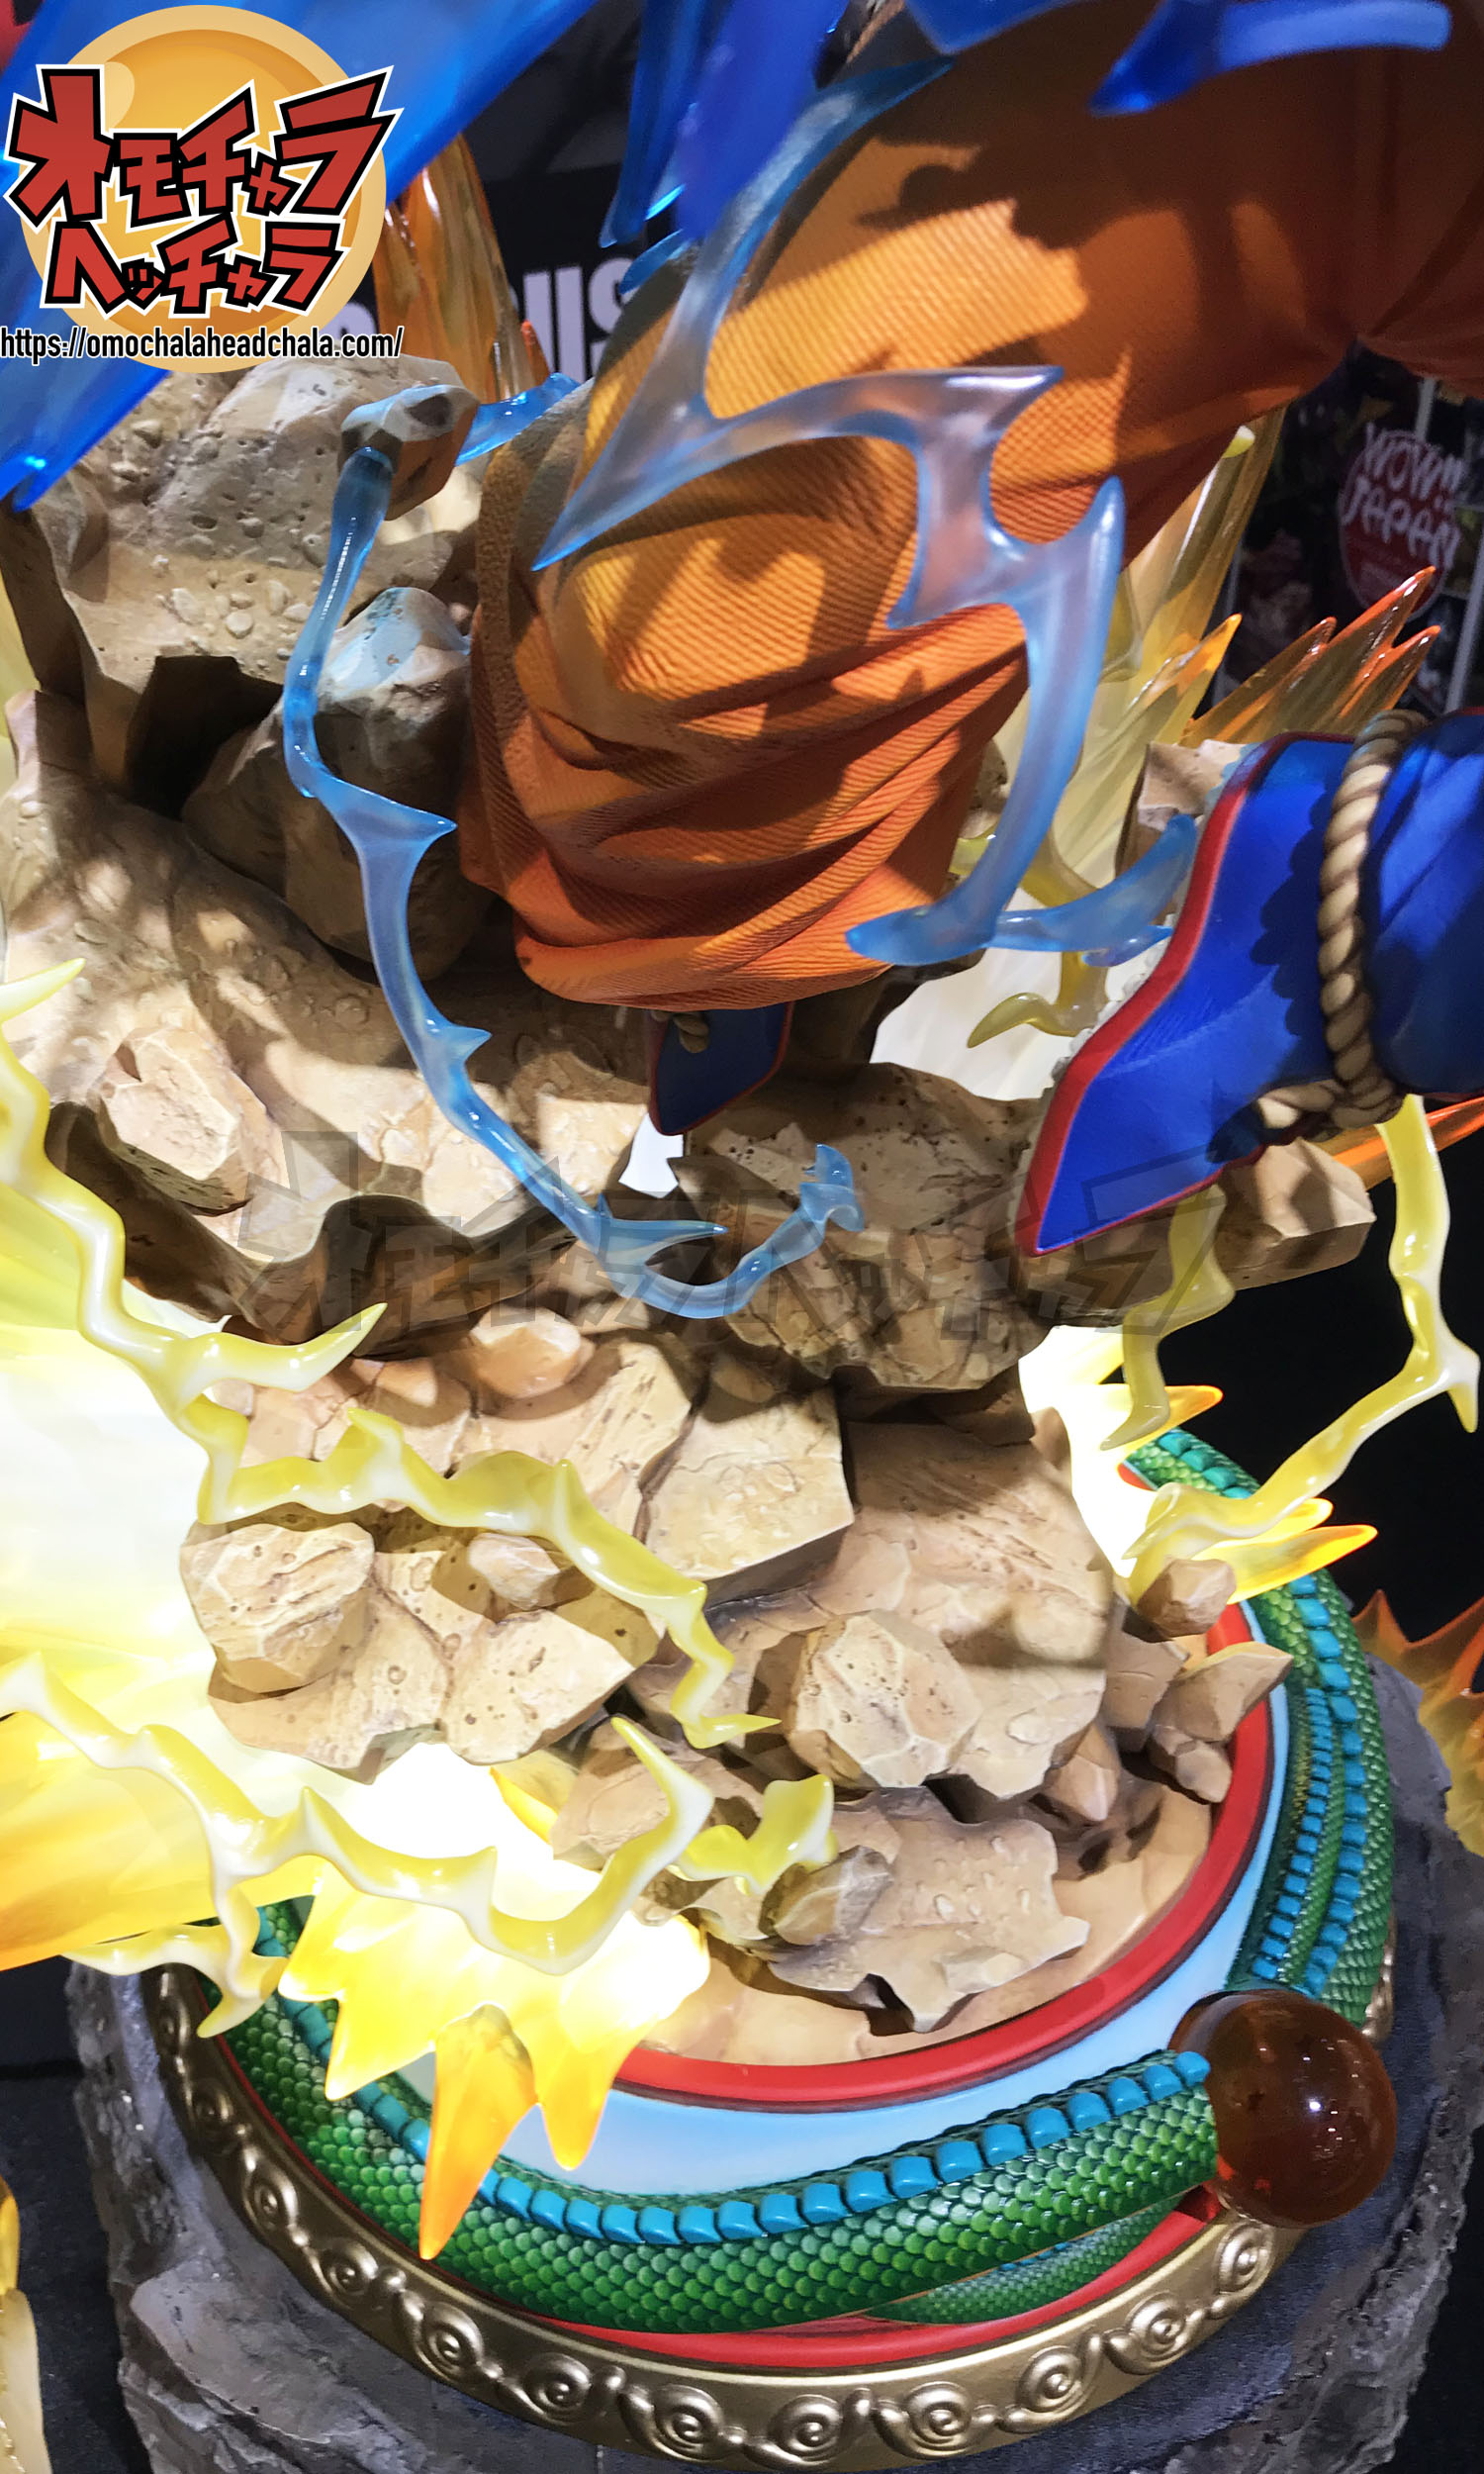 ドラゴンボールフィギュアレビューブログのPrime1Studio(プライムワンスタジオ)×MegaHouse(メガハウス)超サイヤ人3孫悟空